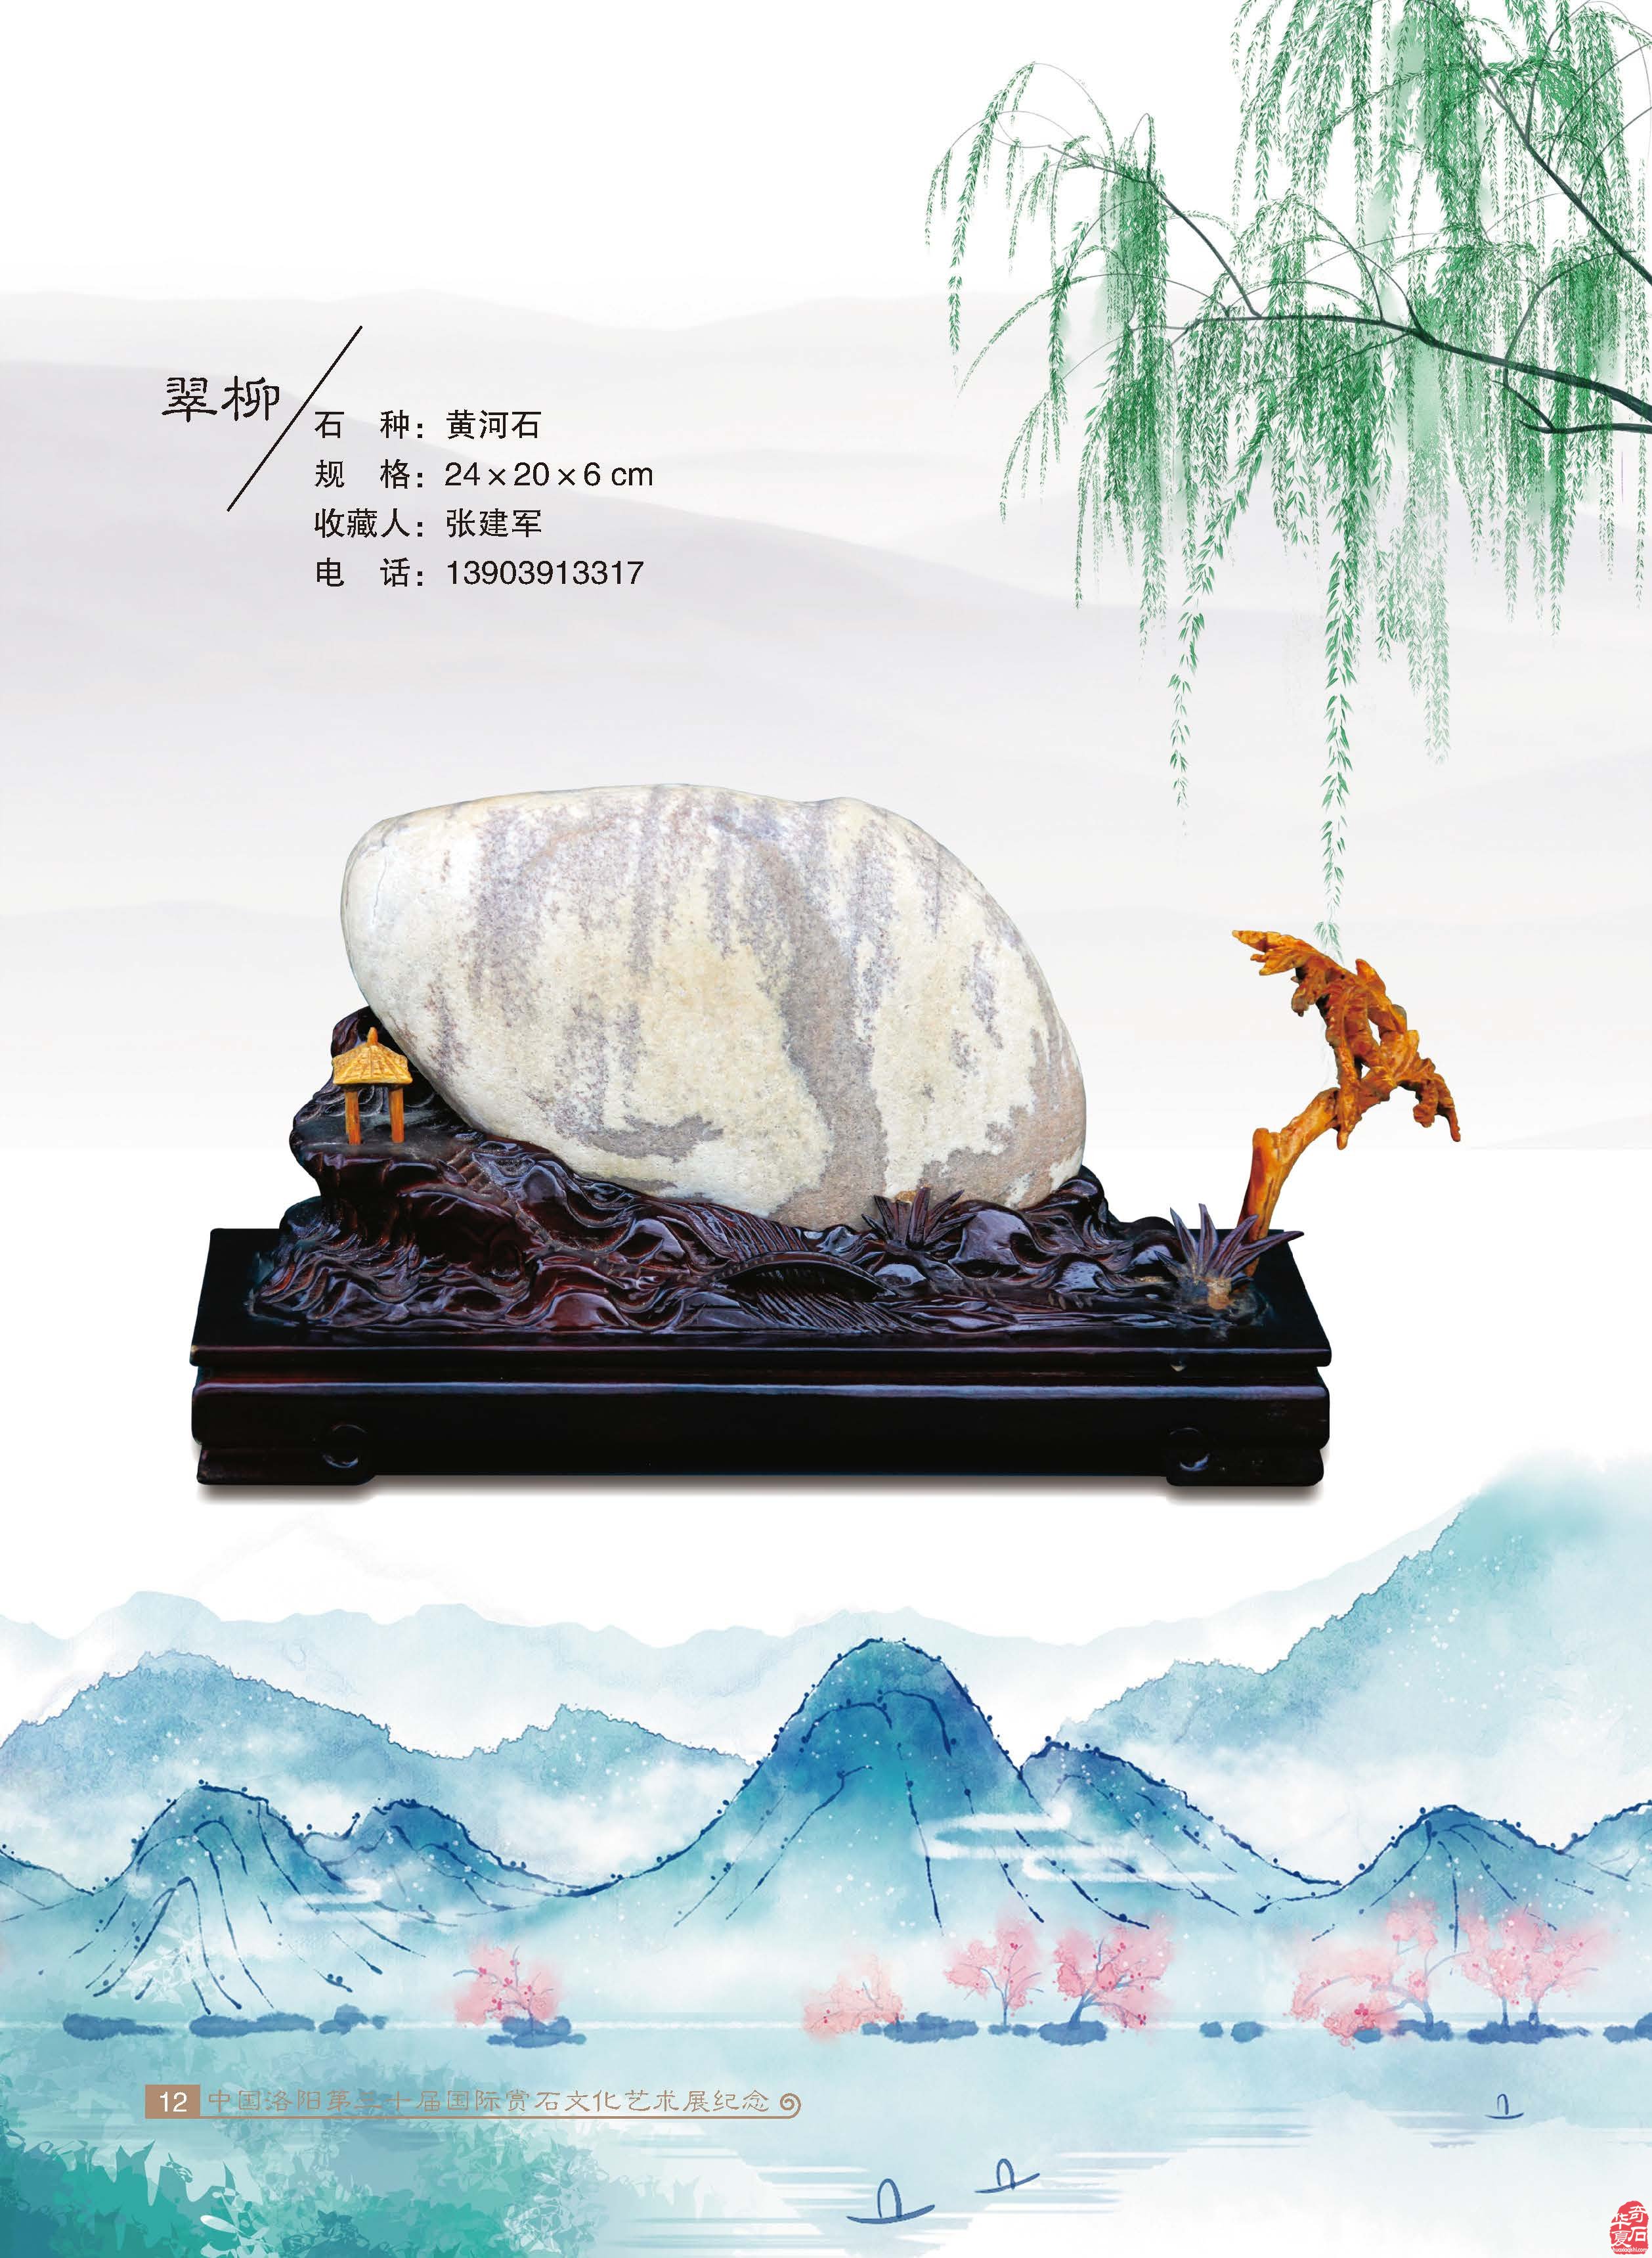 中国洛阳第三十届国际赏石文化艺术展纪念一书即日面世